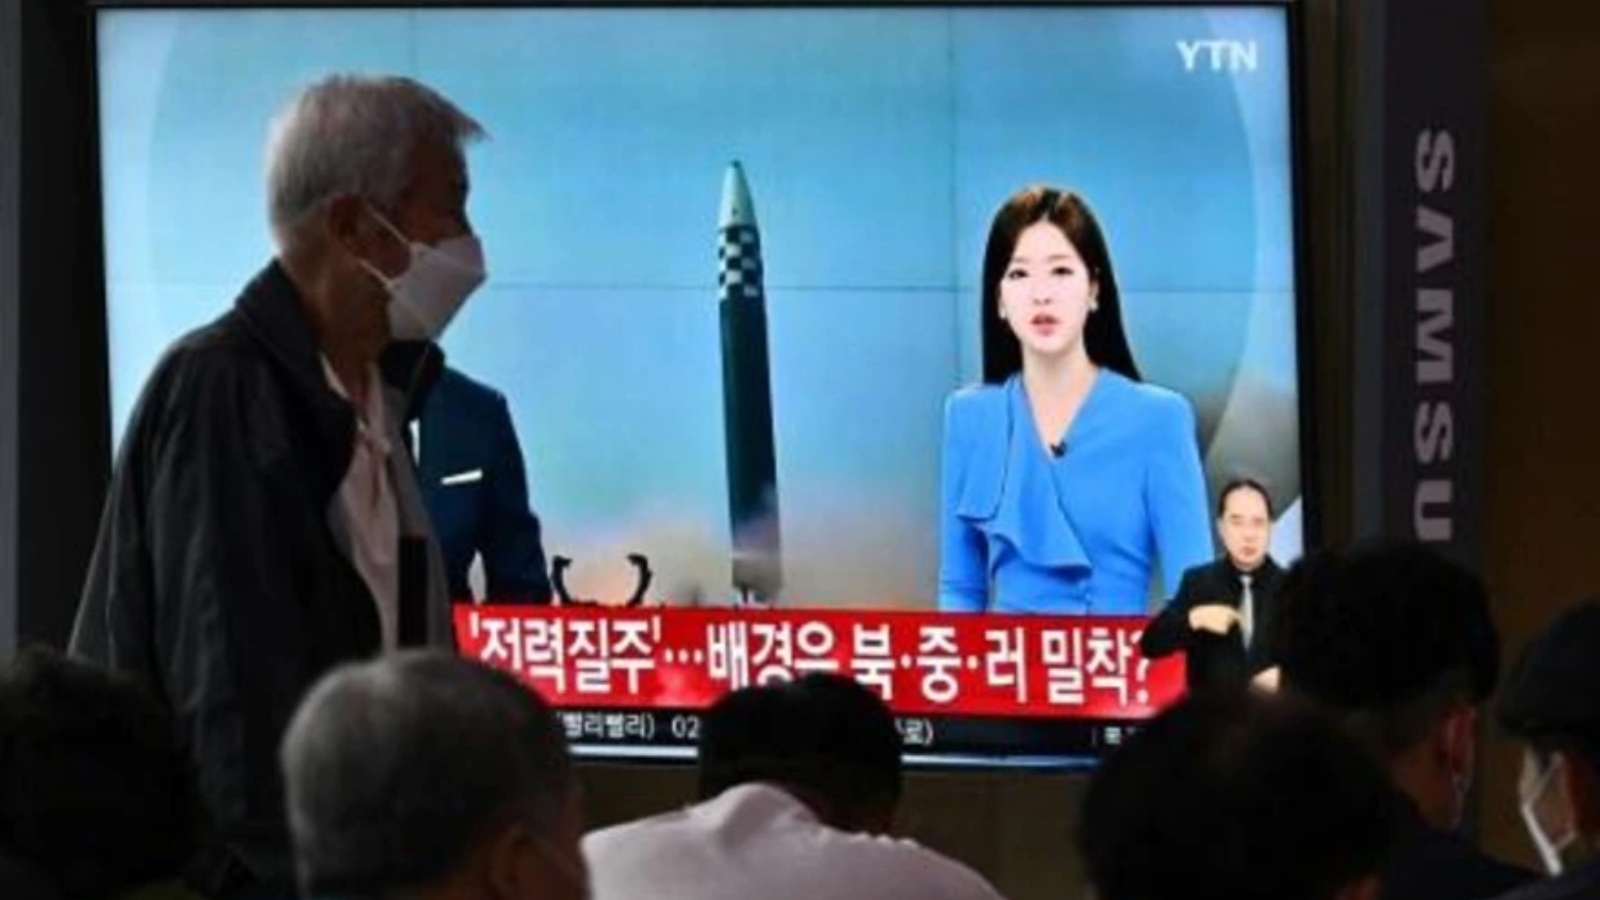 شاشة تعرض نشرة إخبارية تتخللها مشاهد من الأرشيف لتجرية صاروخية كورية شمالية في محطة للقطارات في سيول في 5 يونيو 2022 